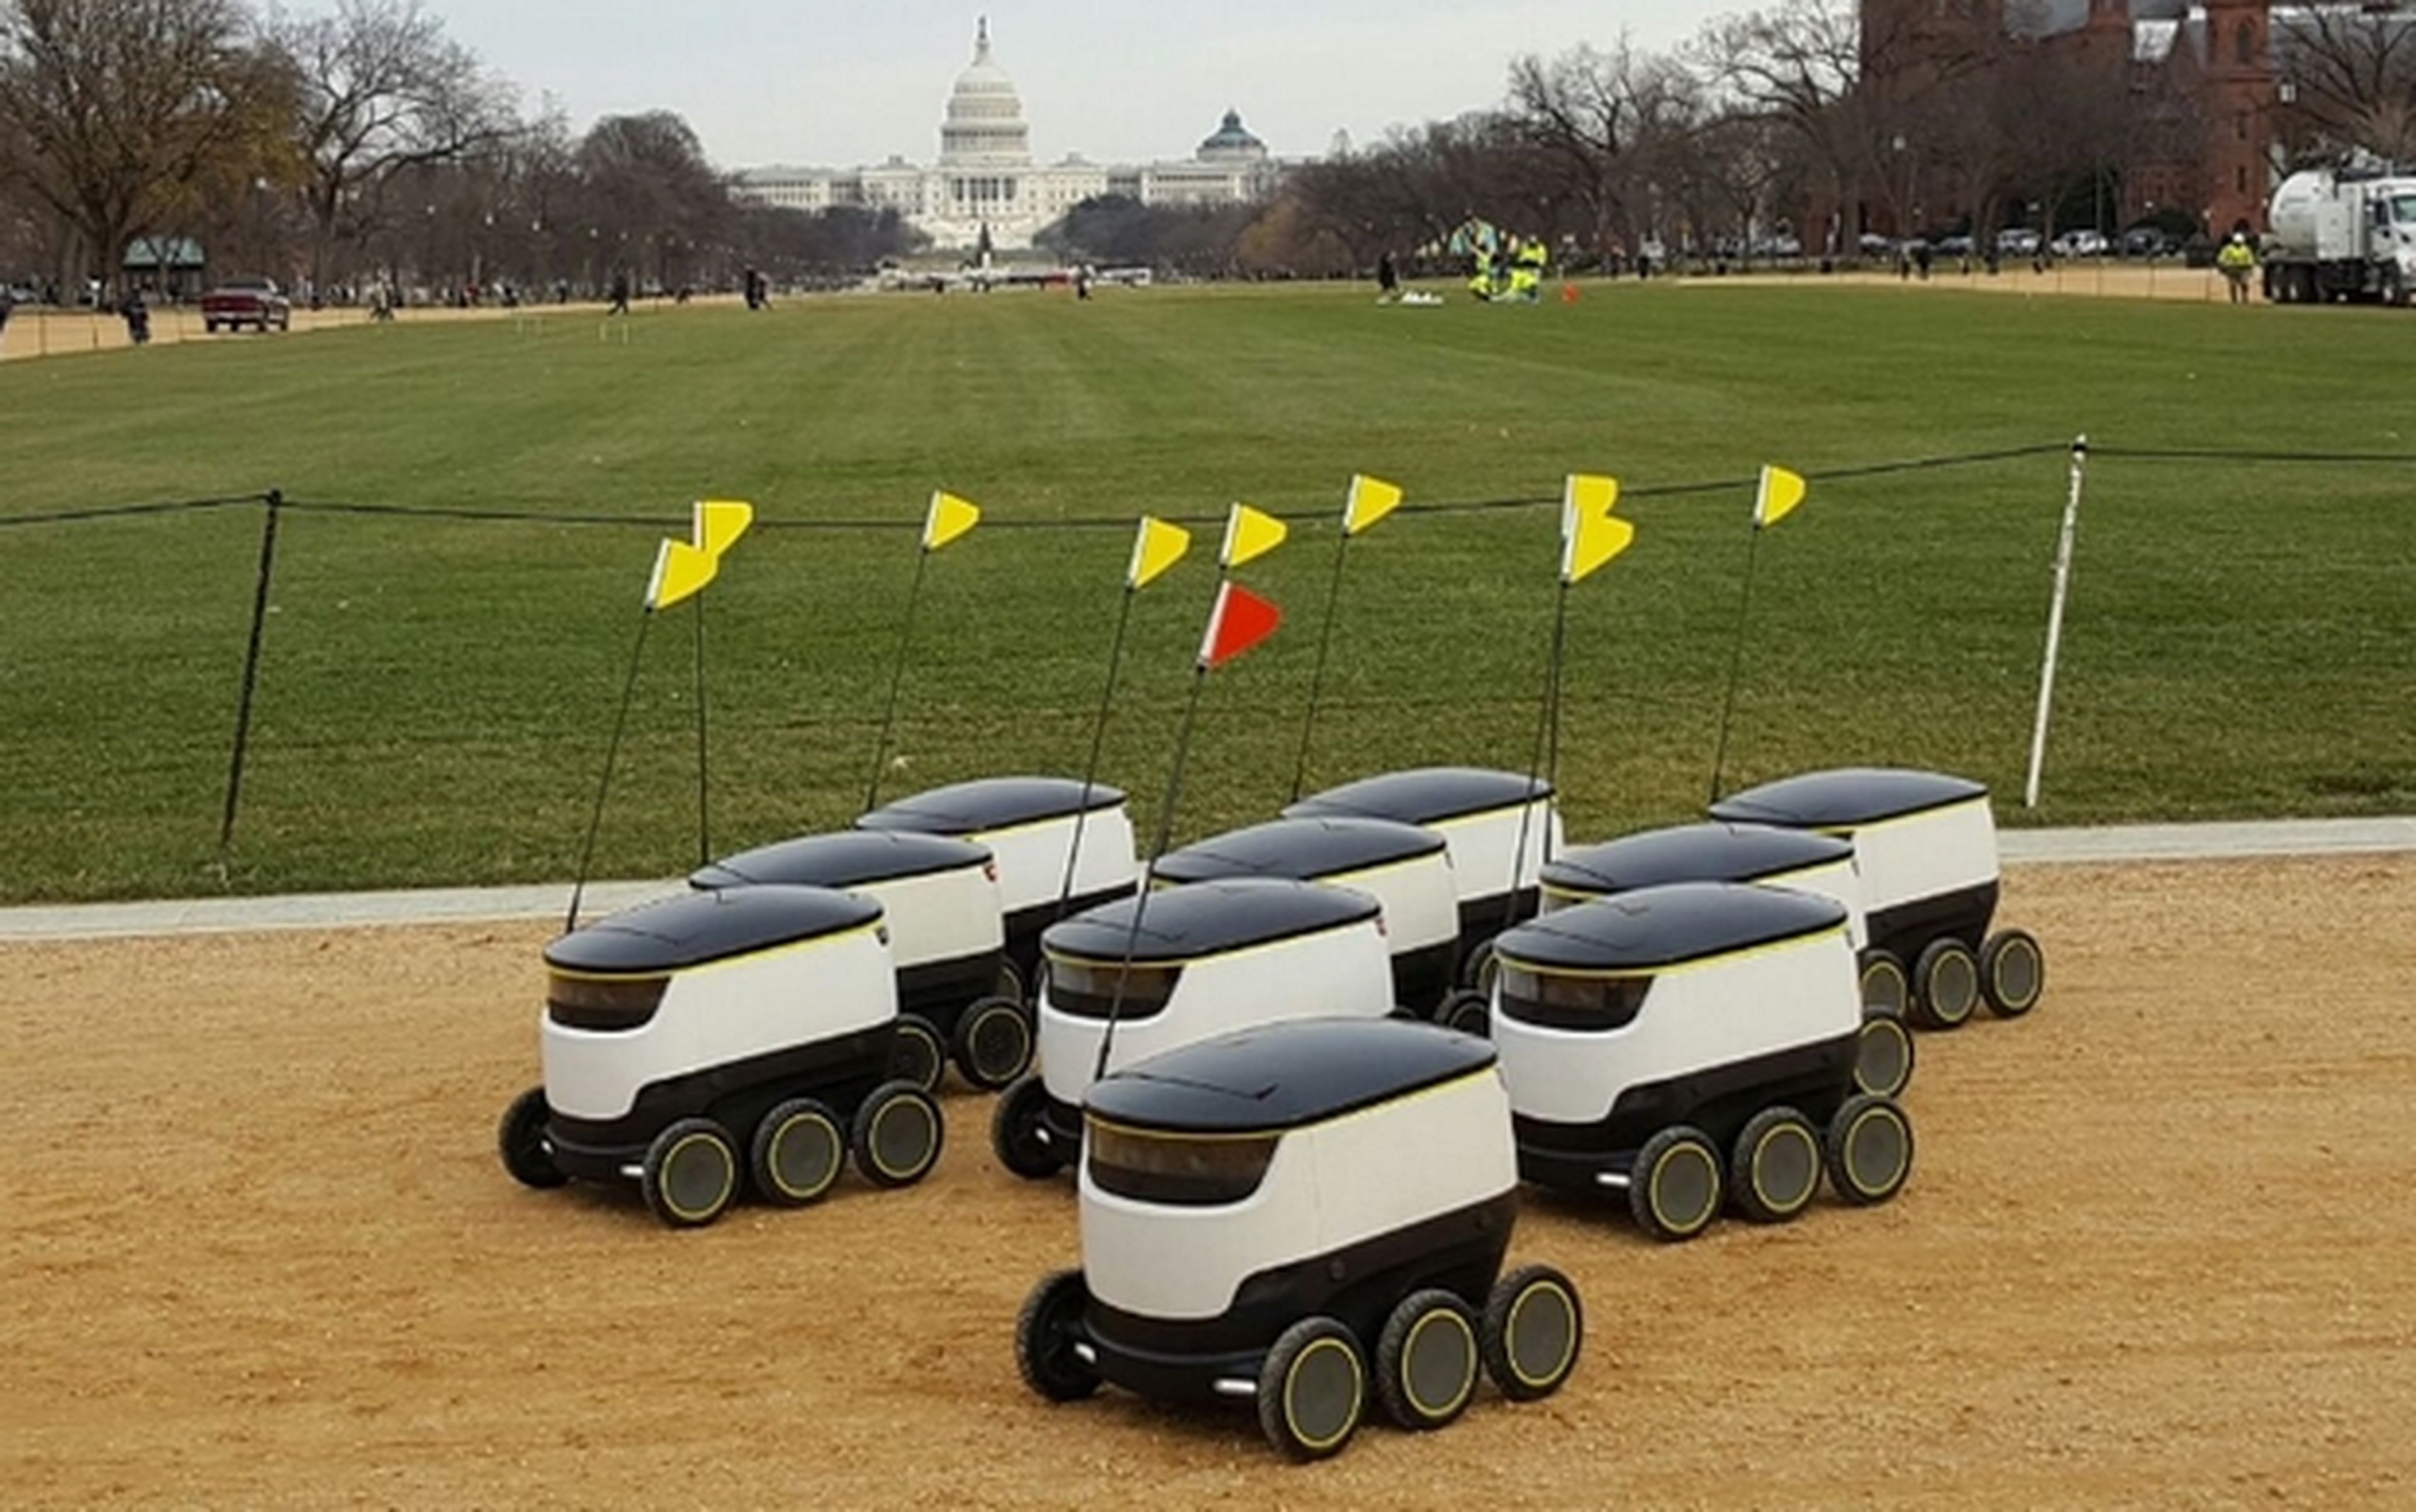 Olvida los drones, tus pedidos te los traerá un robot autónomos sobre ruedas